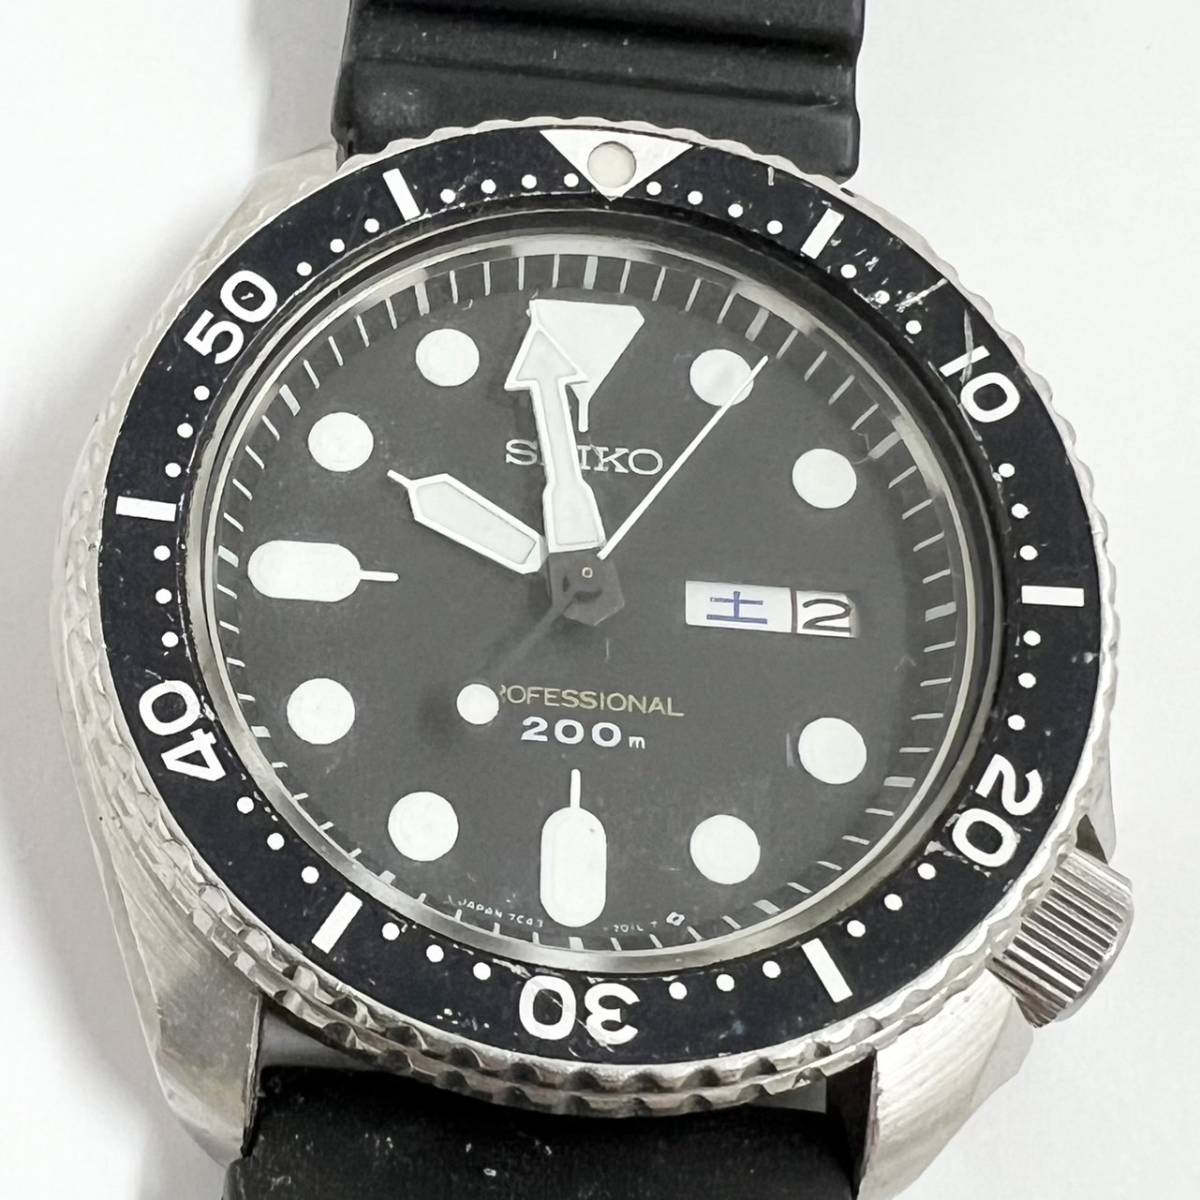 14218/ SEIKO 7C43-7010 セイコー PROFESSIONAL 200M ブラック文字盤 メンズ 腕時計_画像2